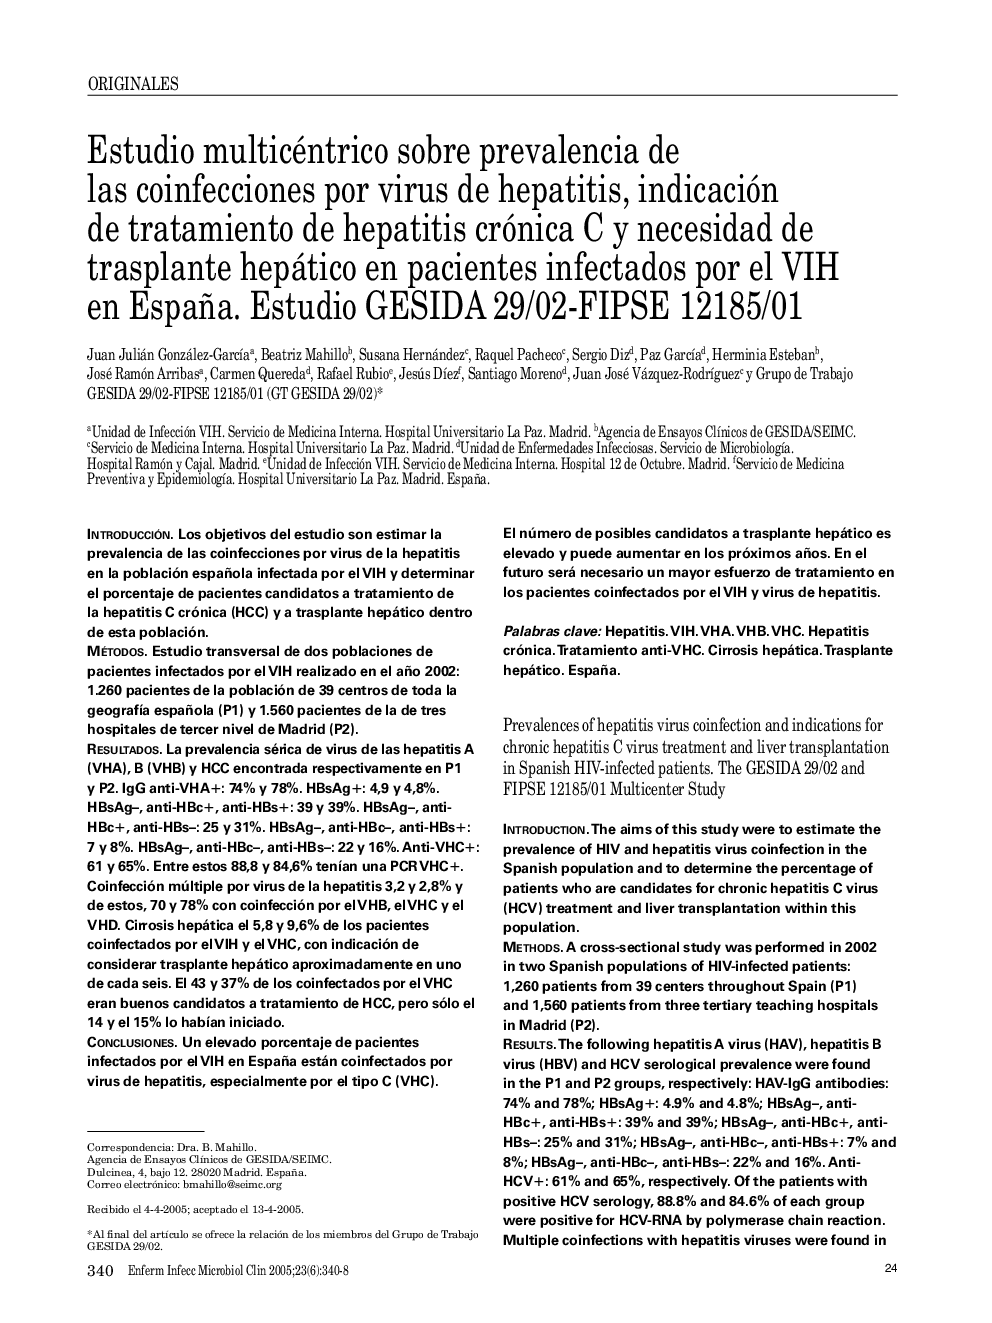 Estudio multicéntrico sobre prevalencia de las coinfecciones por virus de hepatitis, indicación de tratamiento de hepatitis crónica C y necesidad de trasplante hepático en pacientes infectados por el VIH en España. Estudio GESIDA 29/02-FIPSE 12185/01